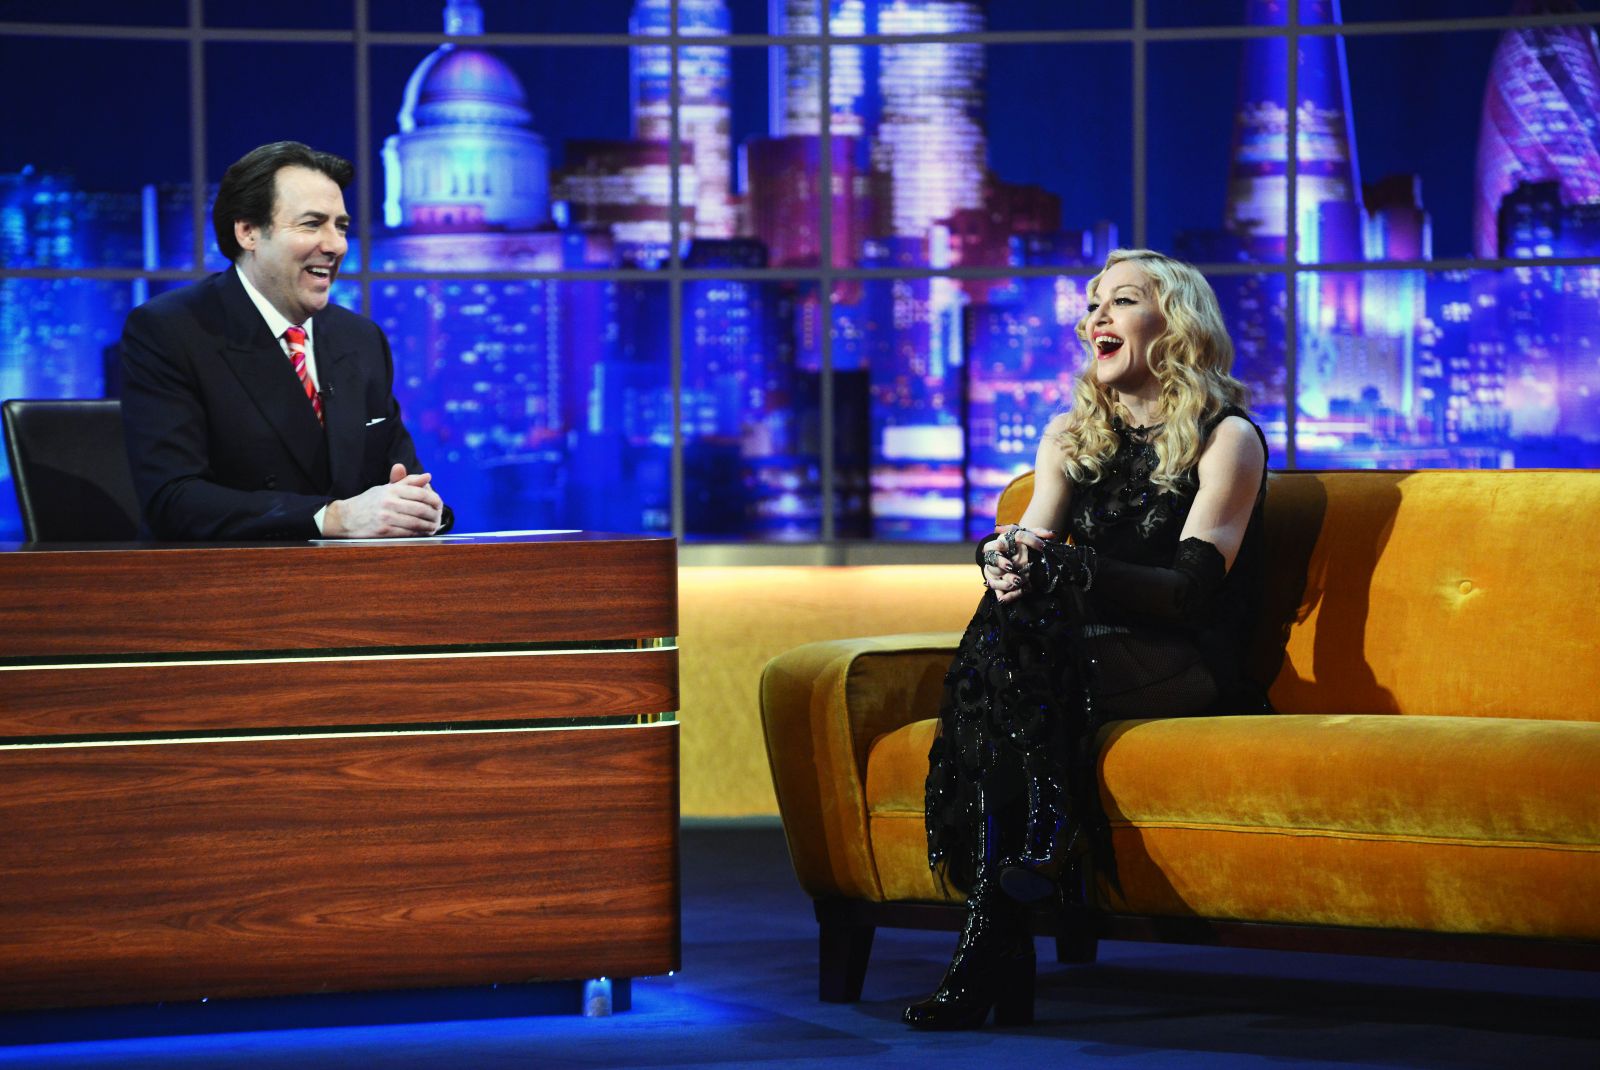 Мадонна взобралась на стол в откровенном наряде во время телешоу